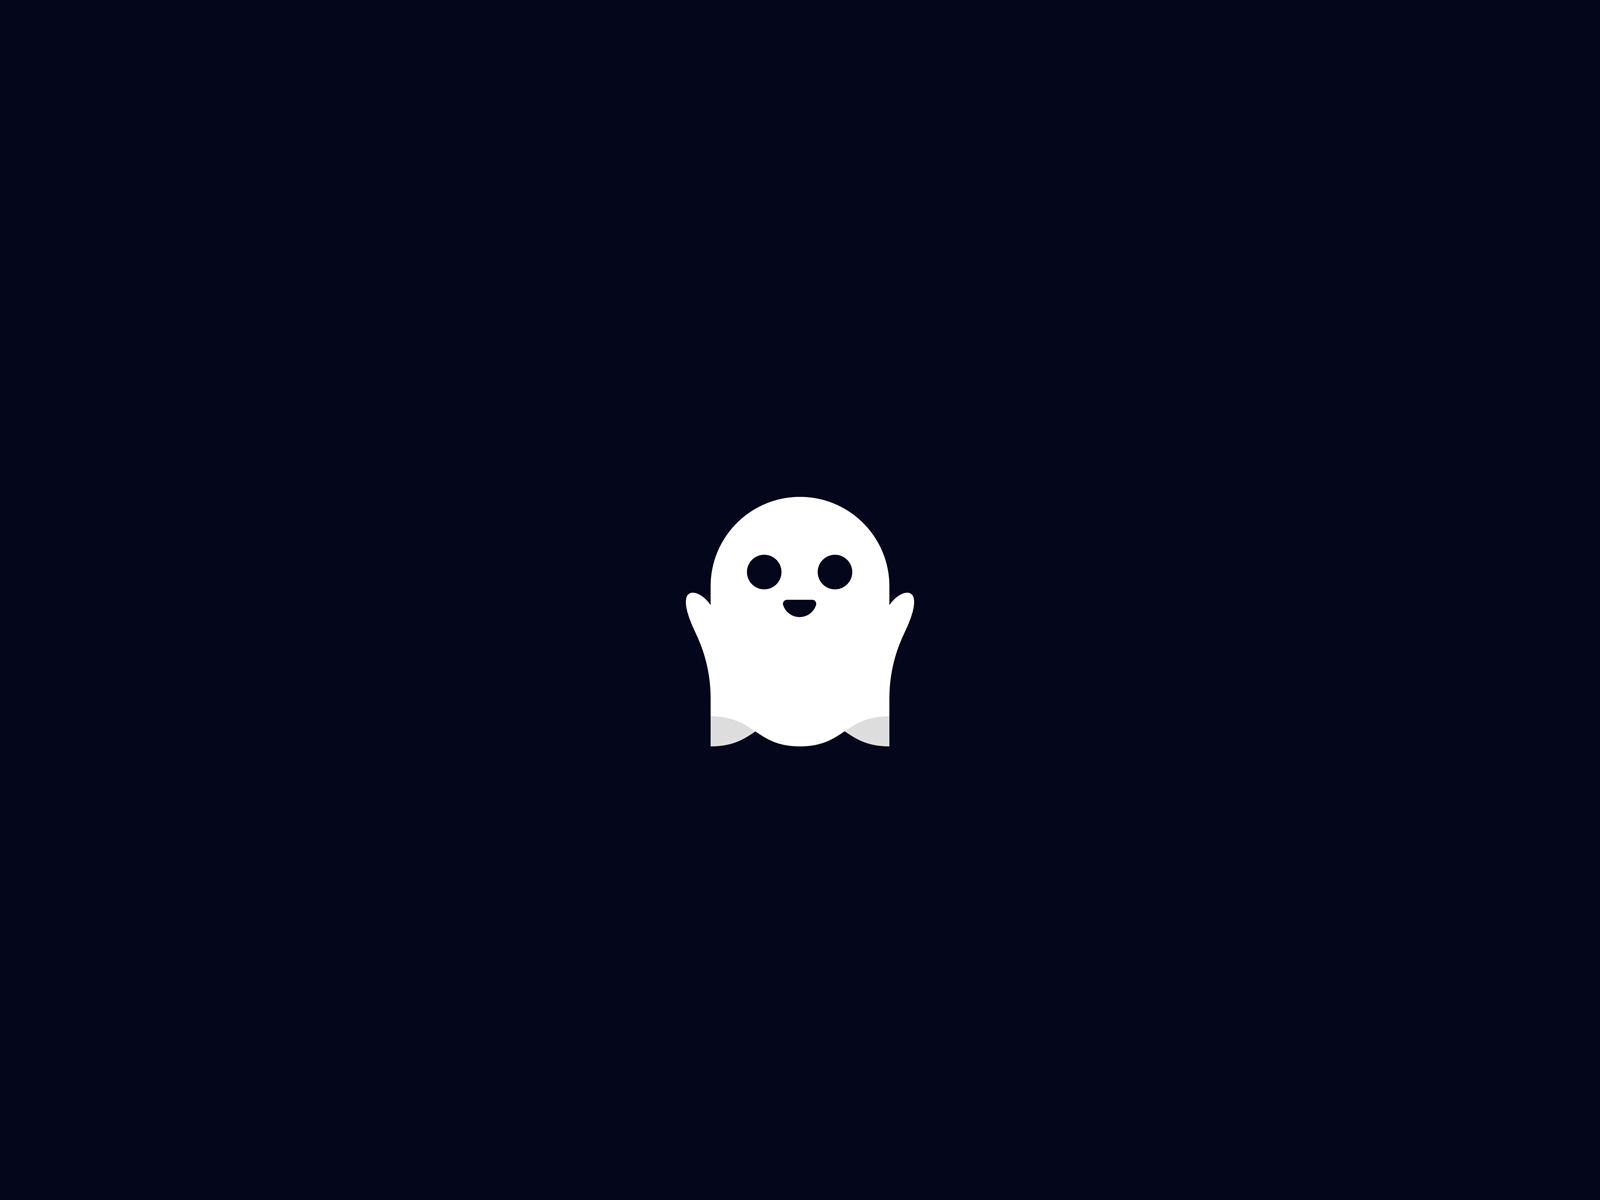 Little Ghost by Jeremy Martinez on Dribbble